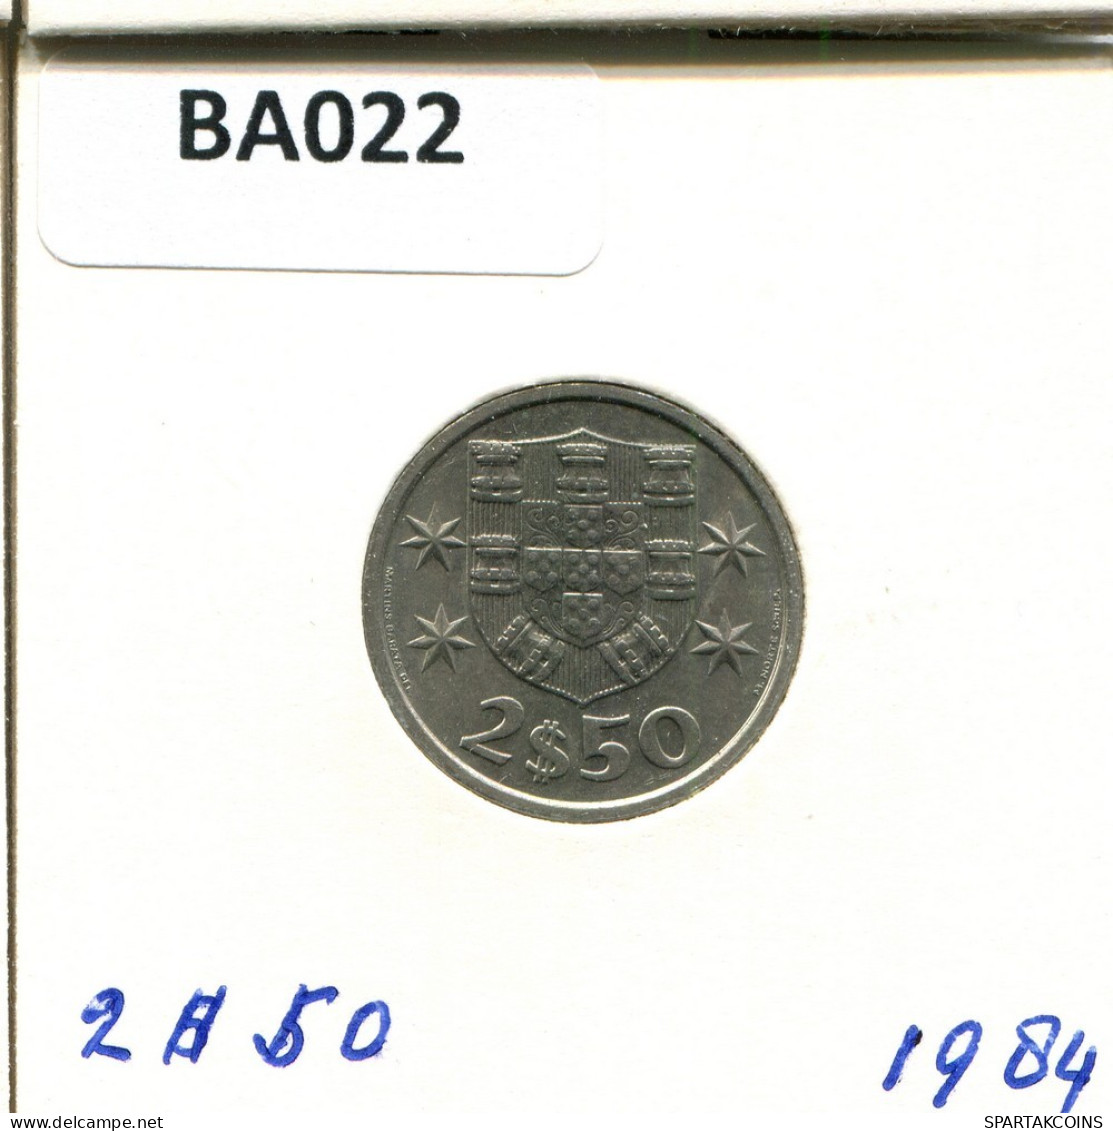 2 $ 50 ESCUDOS 1984 PORTUGAL Coin #BA022.U.A - Portogallo